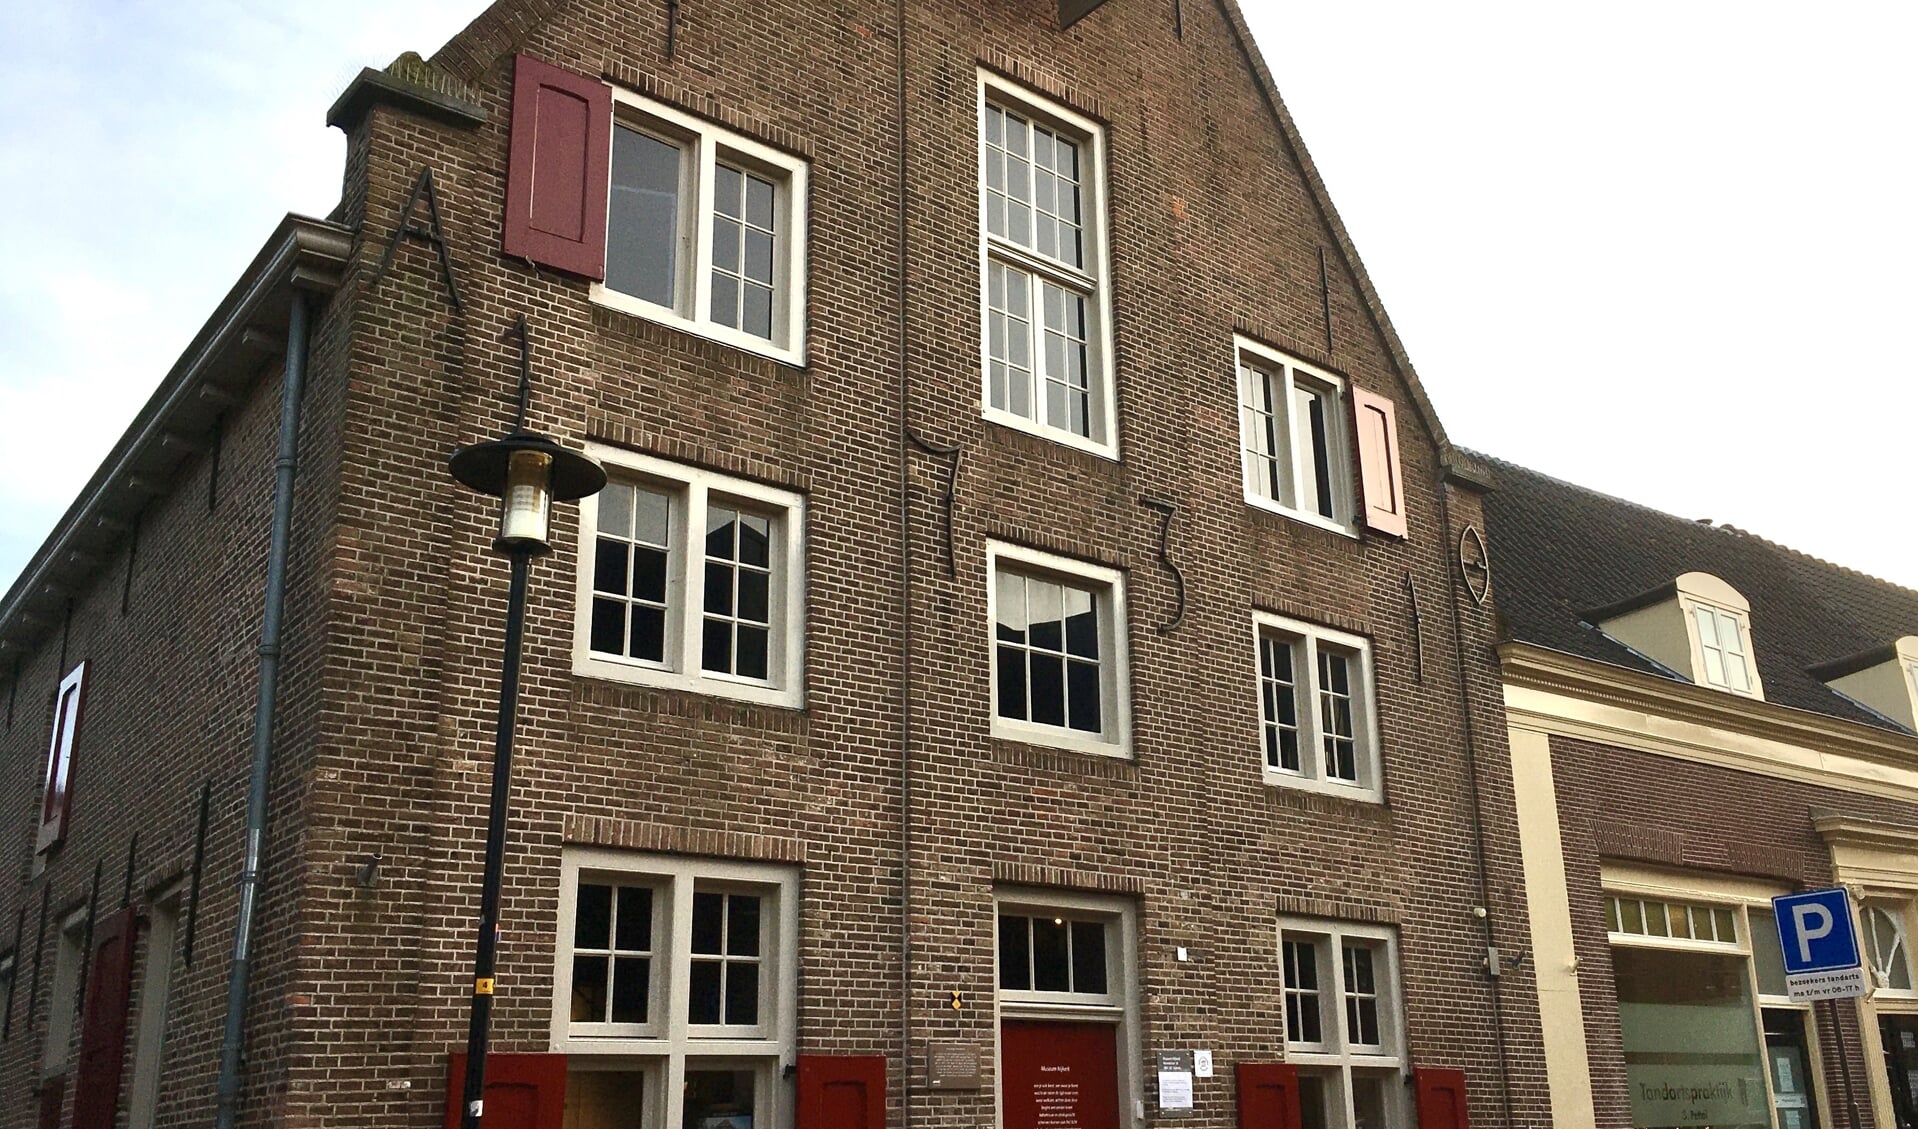 Museum Nijkerk, Venestraat 16, is deelnemer van de Nationale Museumweek